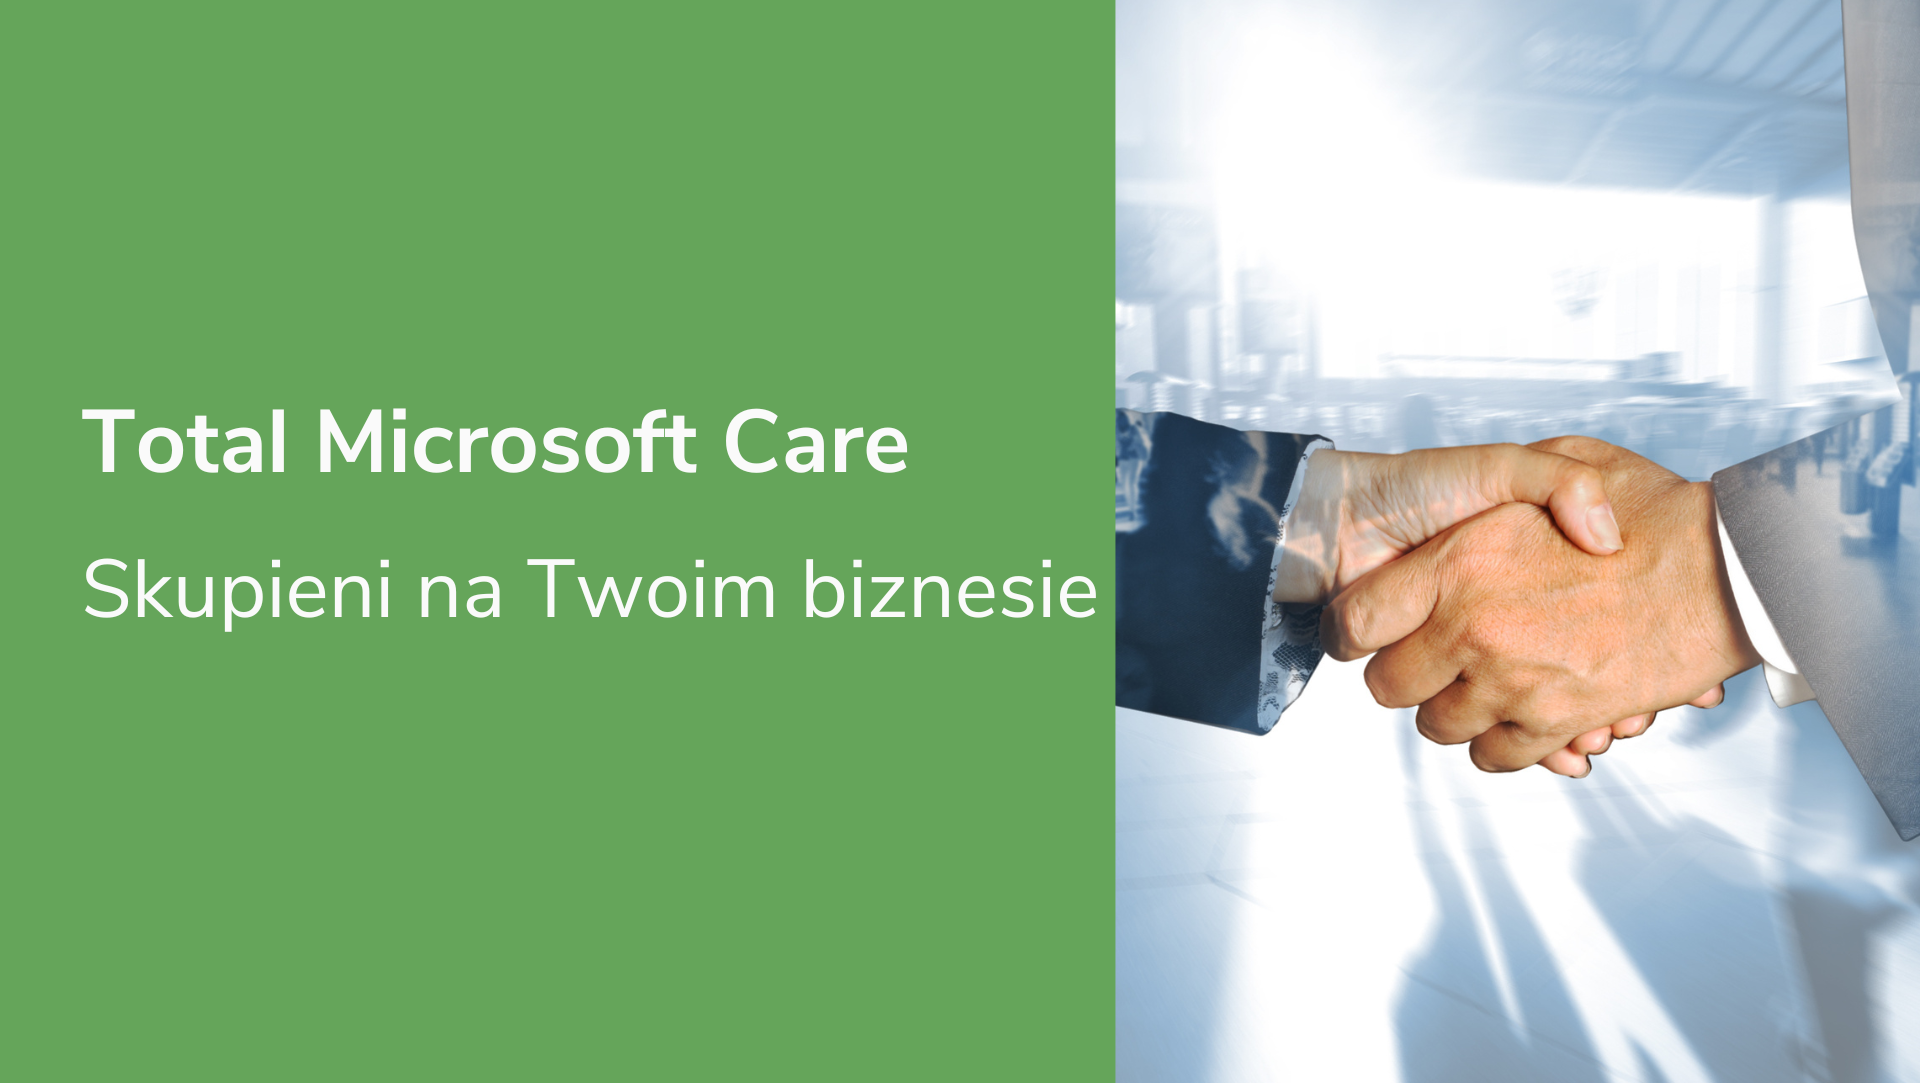 Total Microsoft Care – skupieni na Twoim biznesie